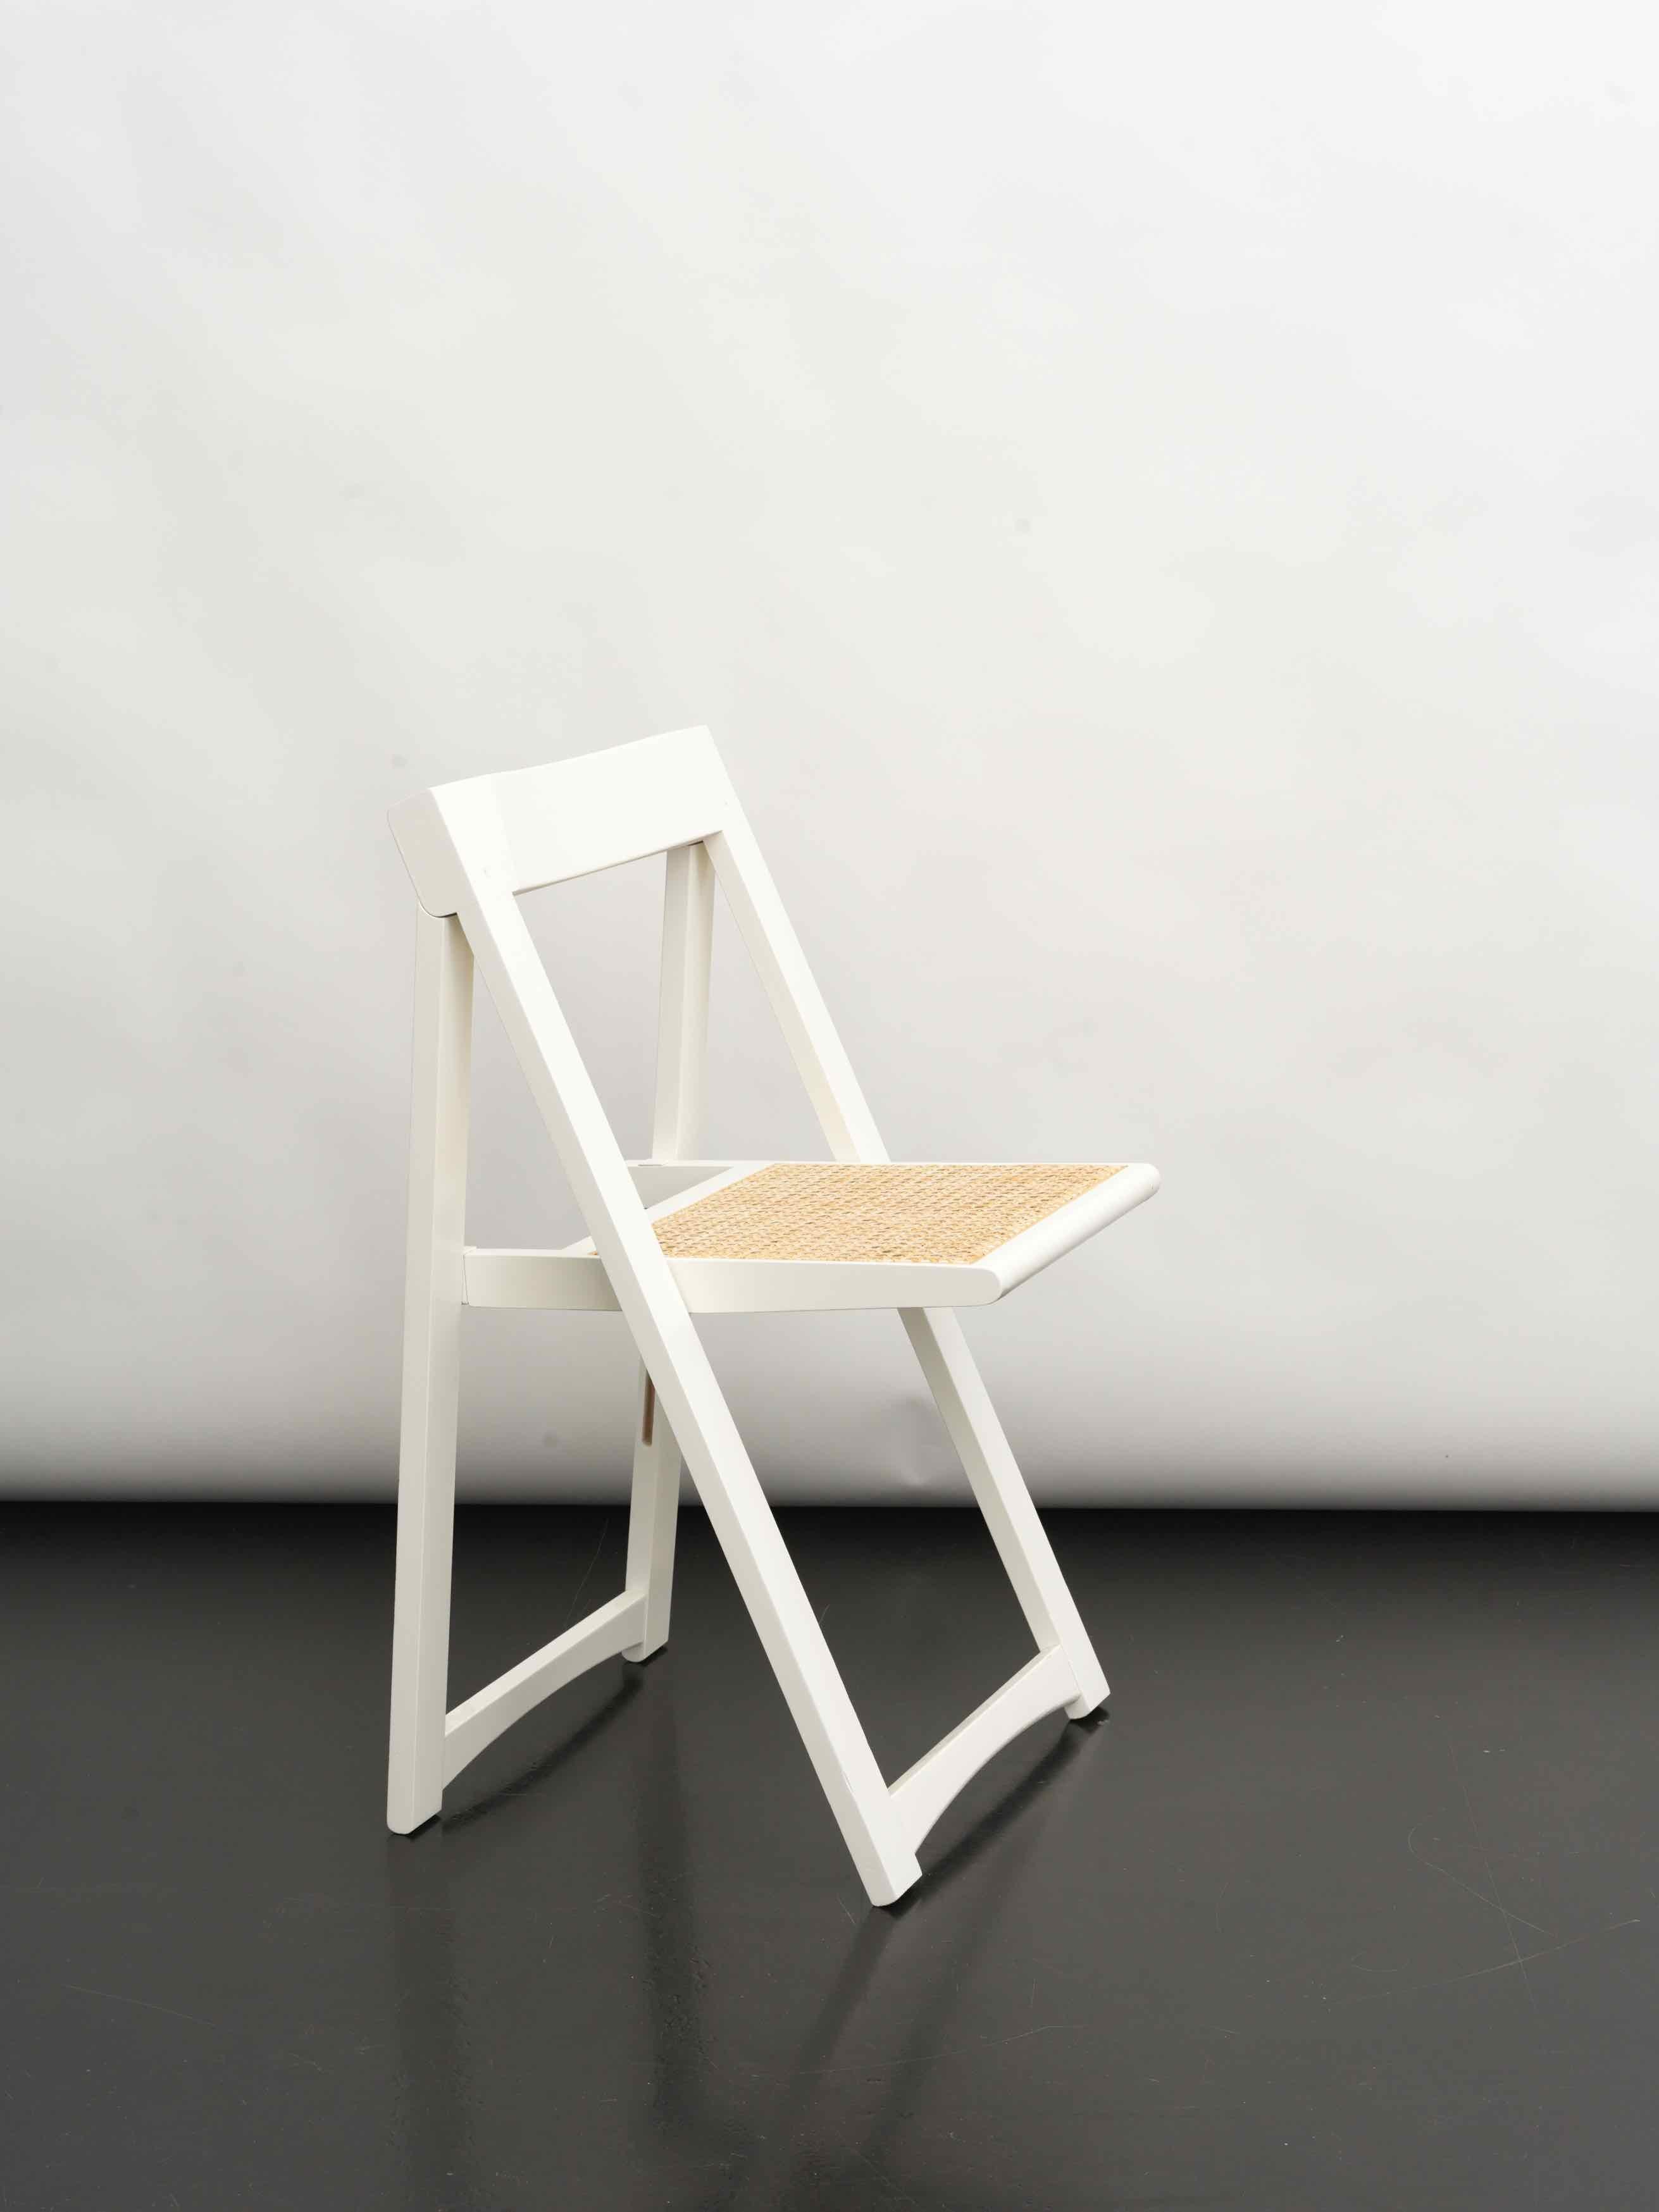 3 chaises pliantes en rotin 'Trieste' dans le style d'Aldo Jacober, années 1970.
Design/One moderne et minimal.
Ils sont très faciles à plier et prennent très peu de place. 